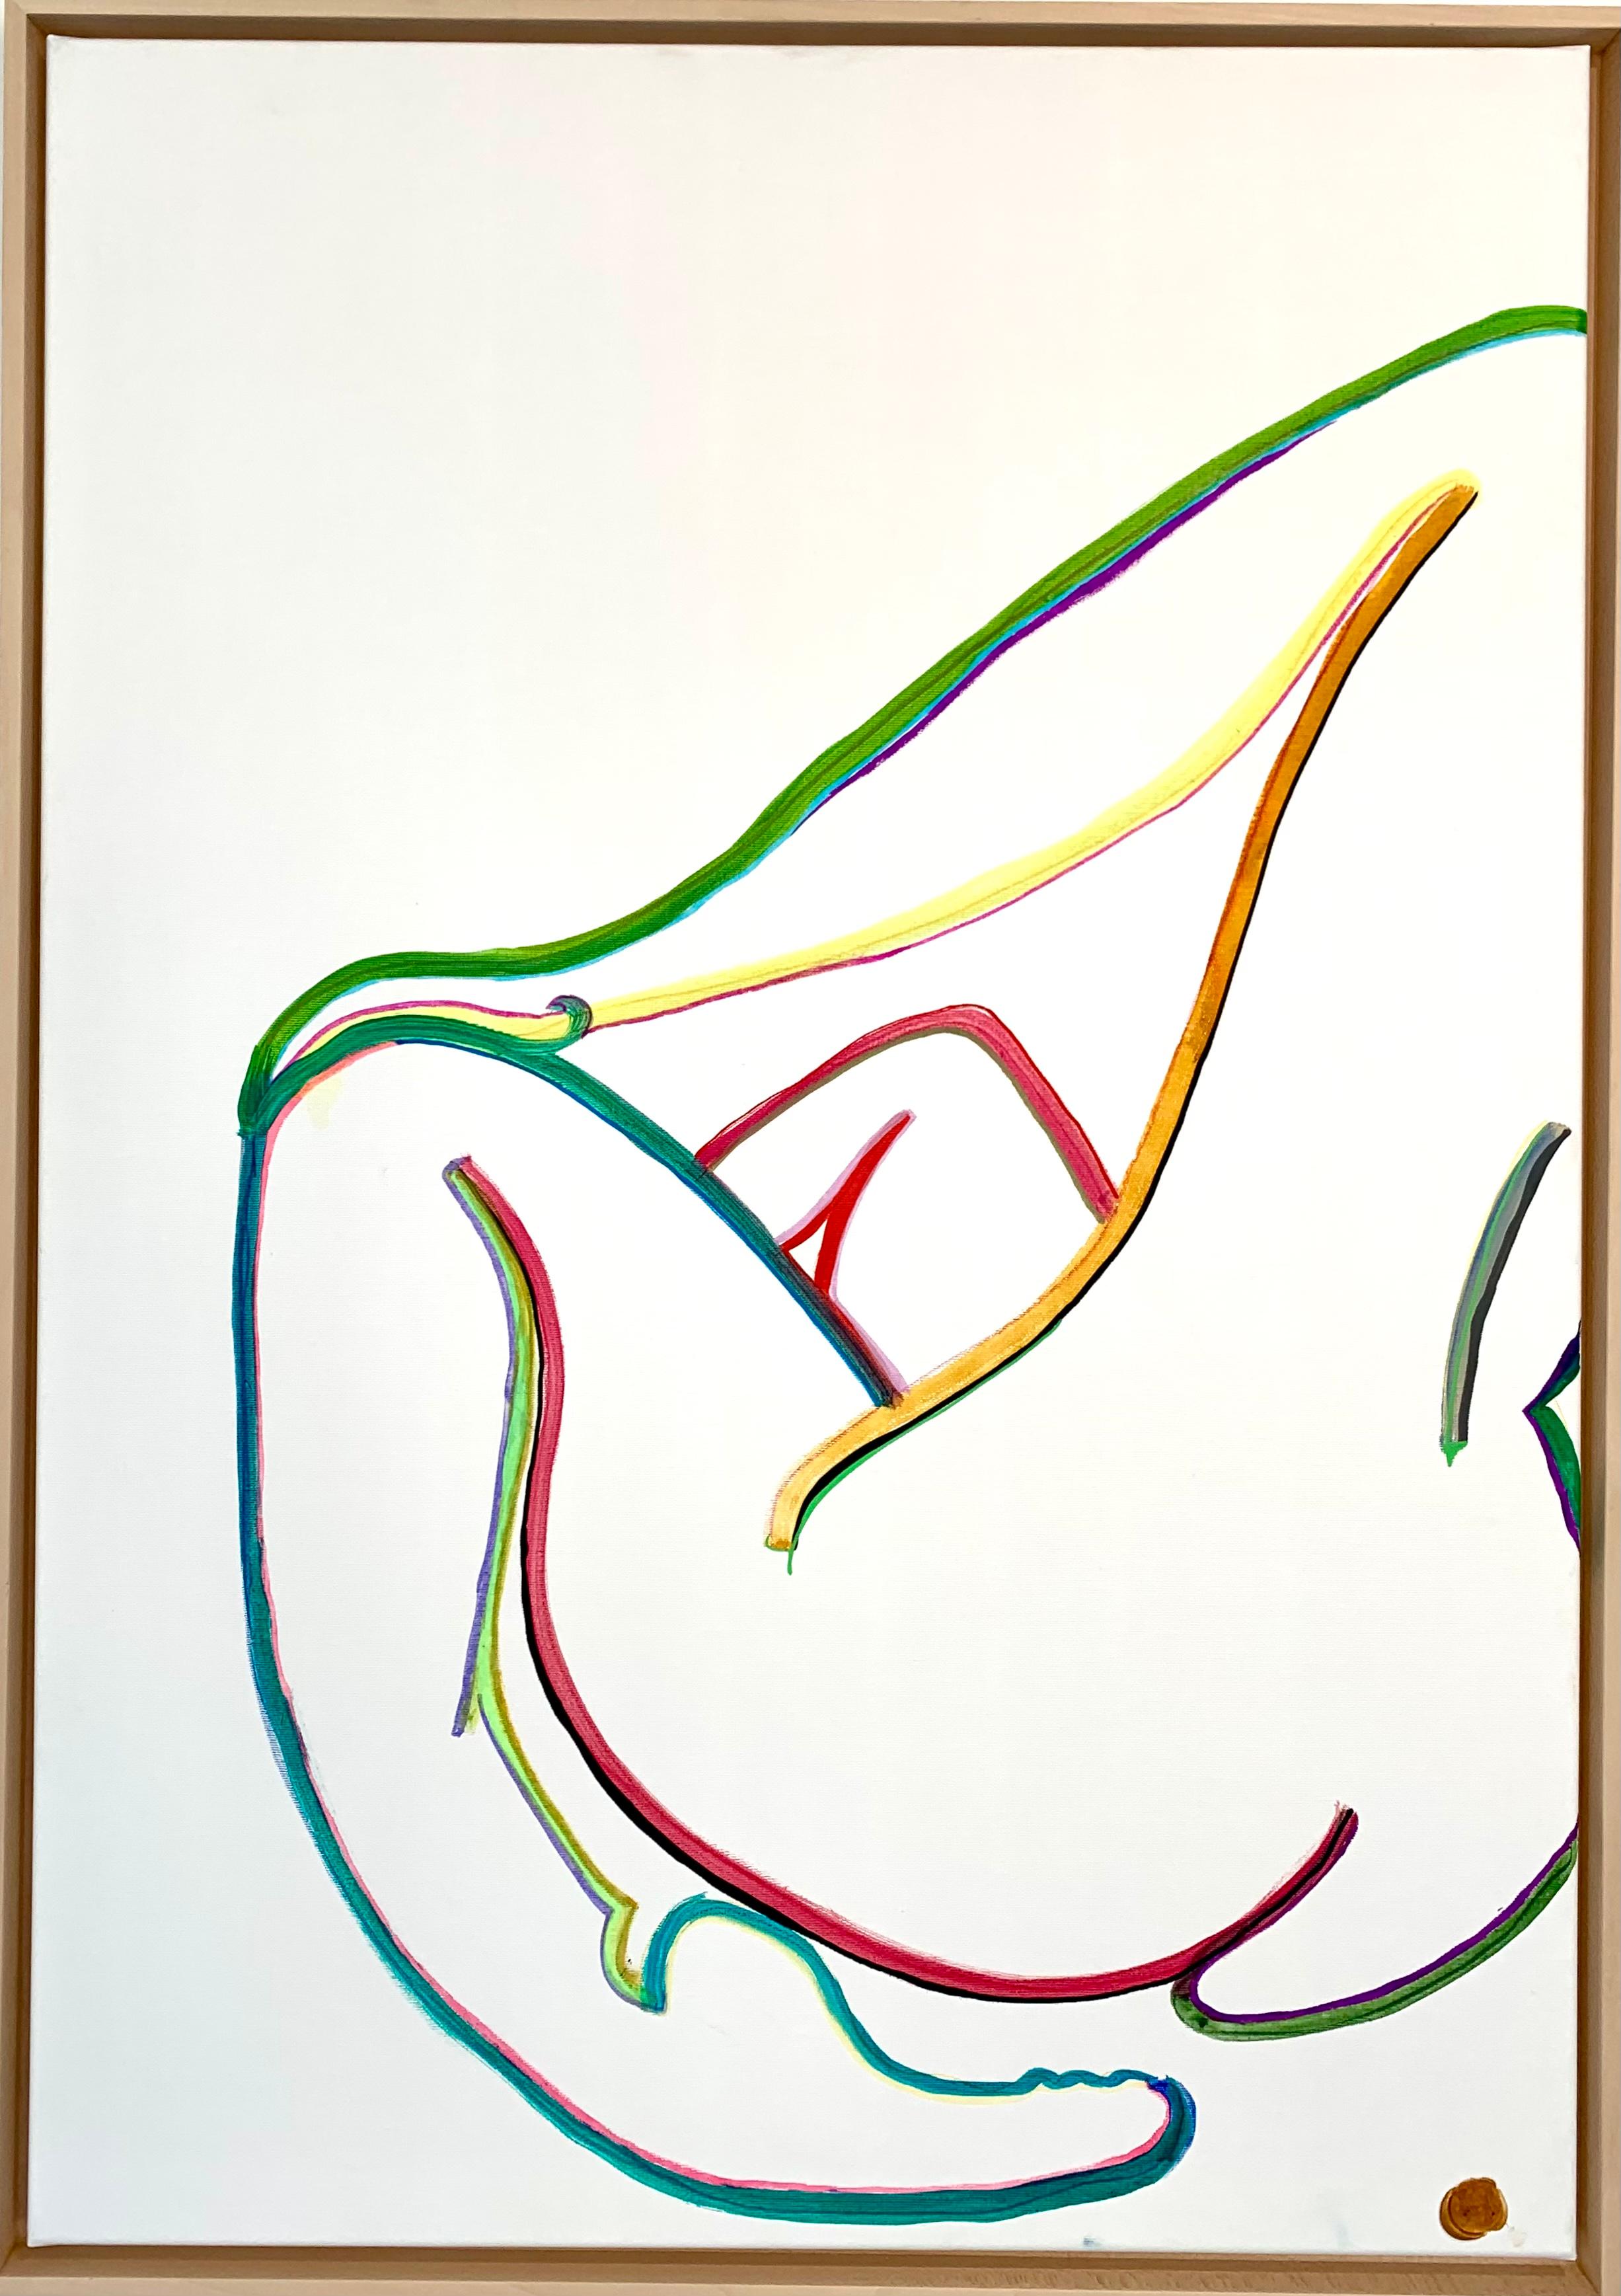 Abstract Painting Katharina Hormel - D'après Matisse par K.K. Hormel - Nu Peinture abstraite contemporaine en couleurs